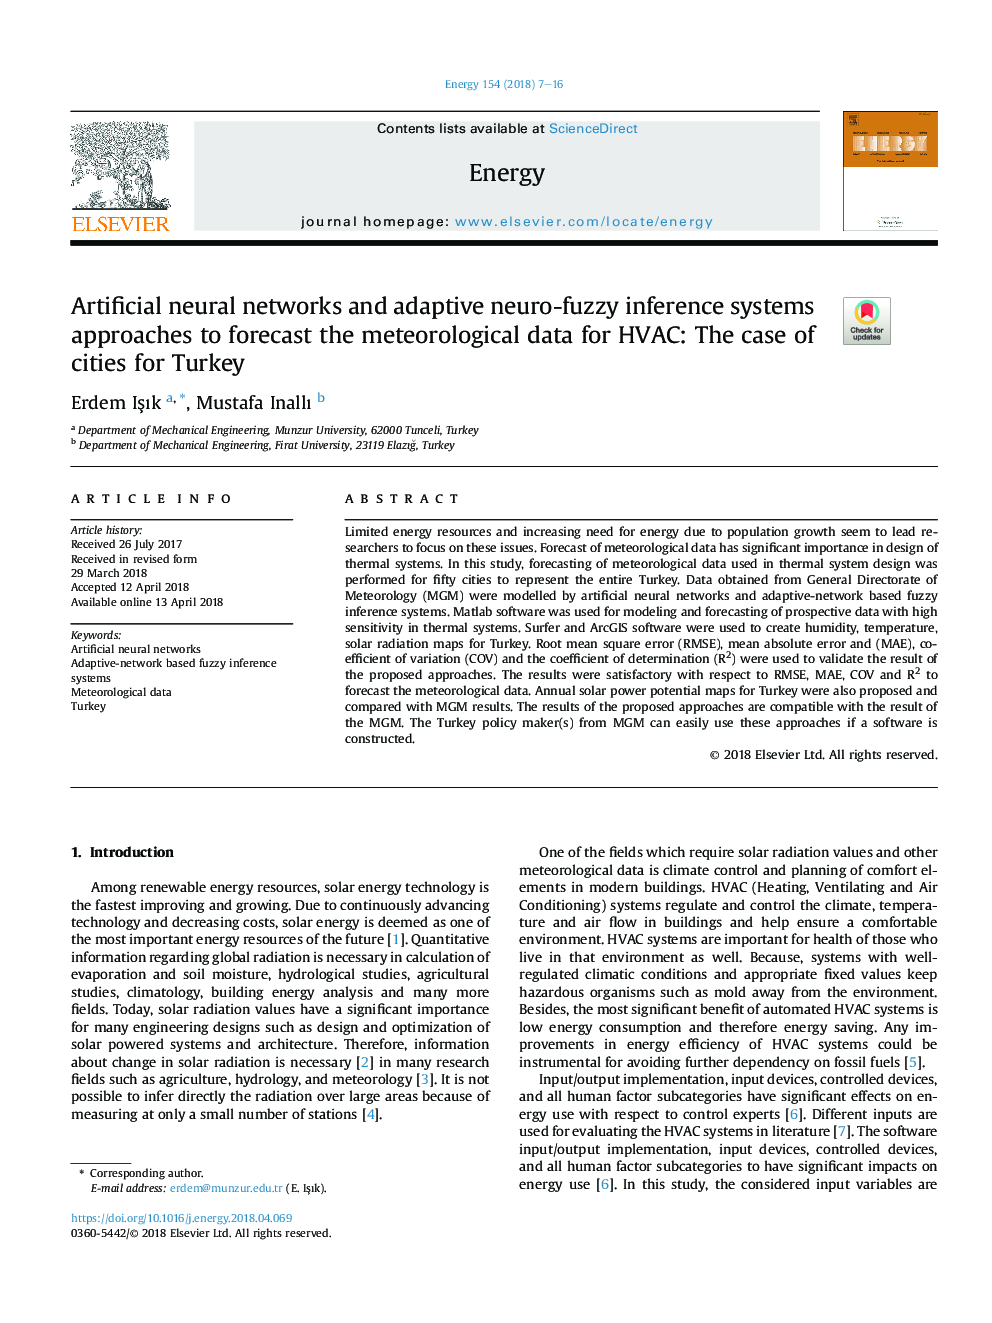 شبکه های عصبی مصنوعی و سیستم های استنتاج فازی سازگار برای پیش بینی داده های هواشناسی برای سیستم های تهویه مطبوع: مورد شهرهای ترکیه 